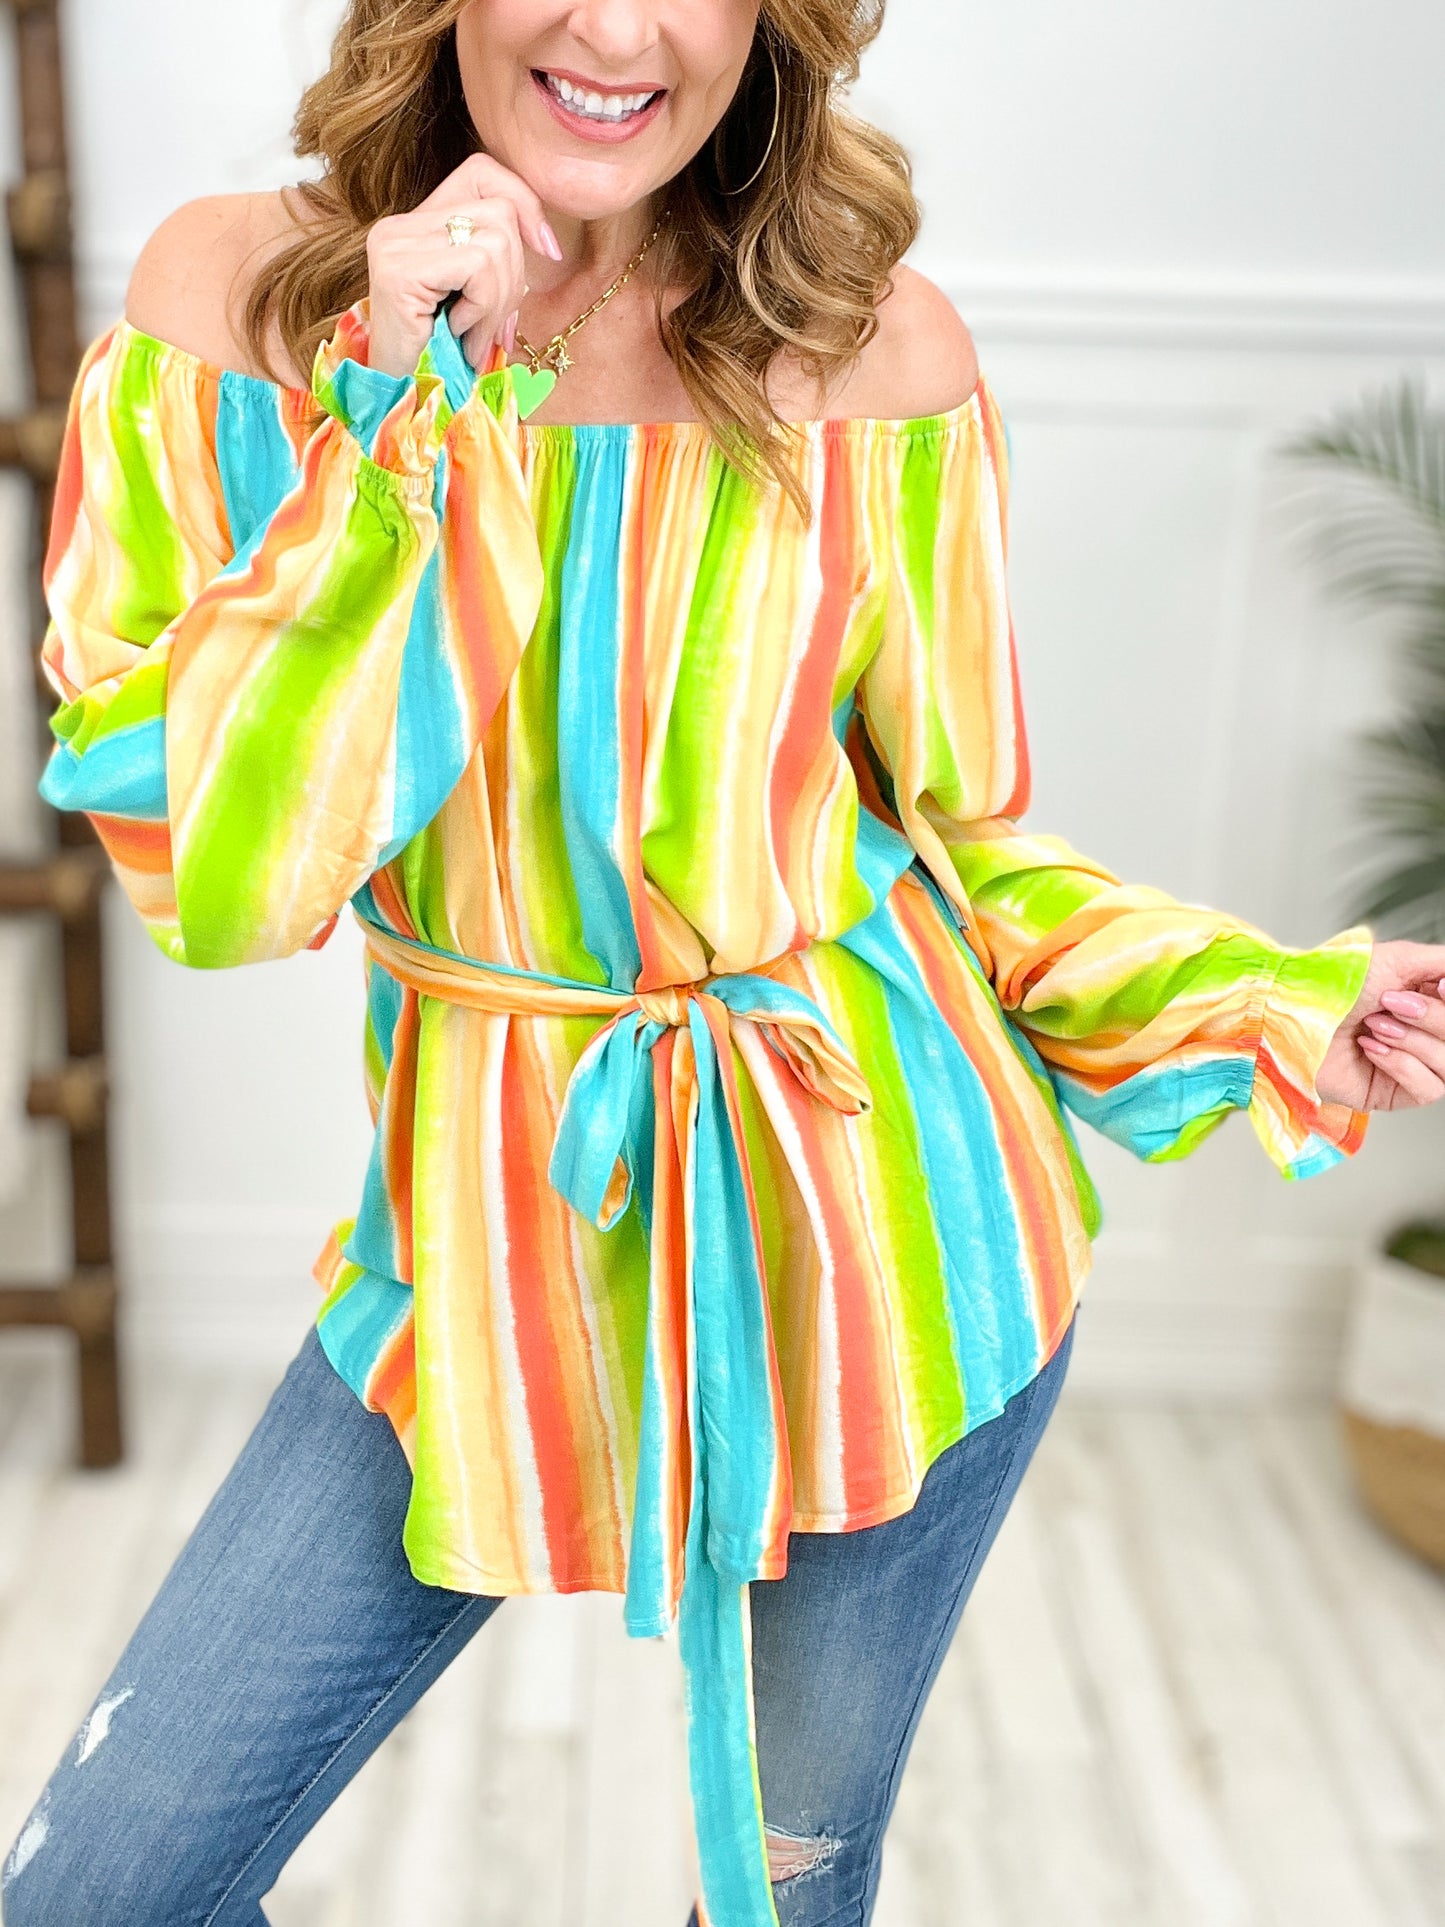 Multi colored striped blouse